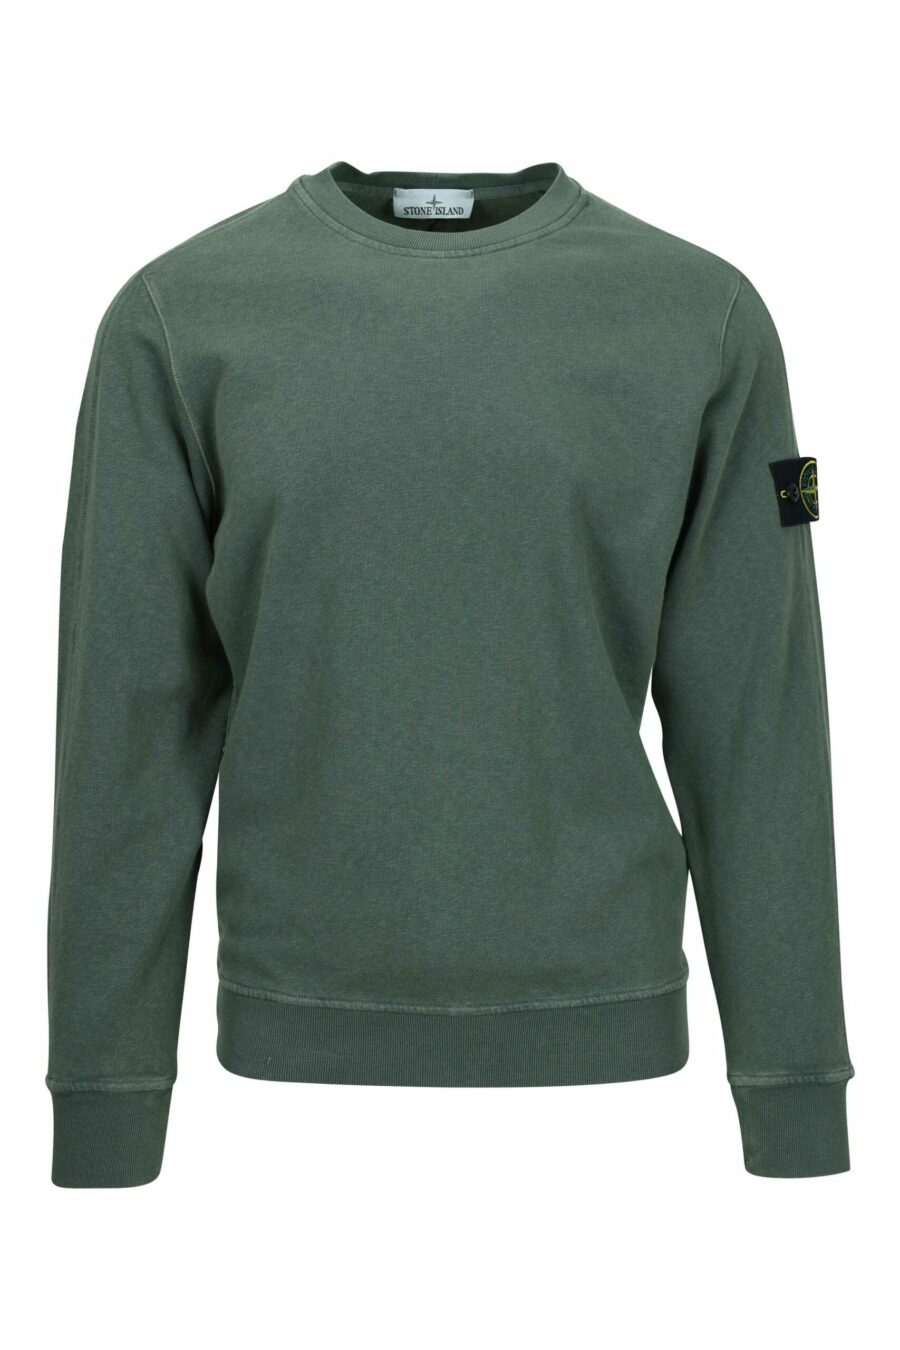 Sweat-shirt vert militaire avec logo boussole - 8052572906923 échelonné